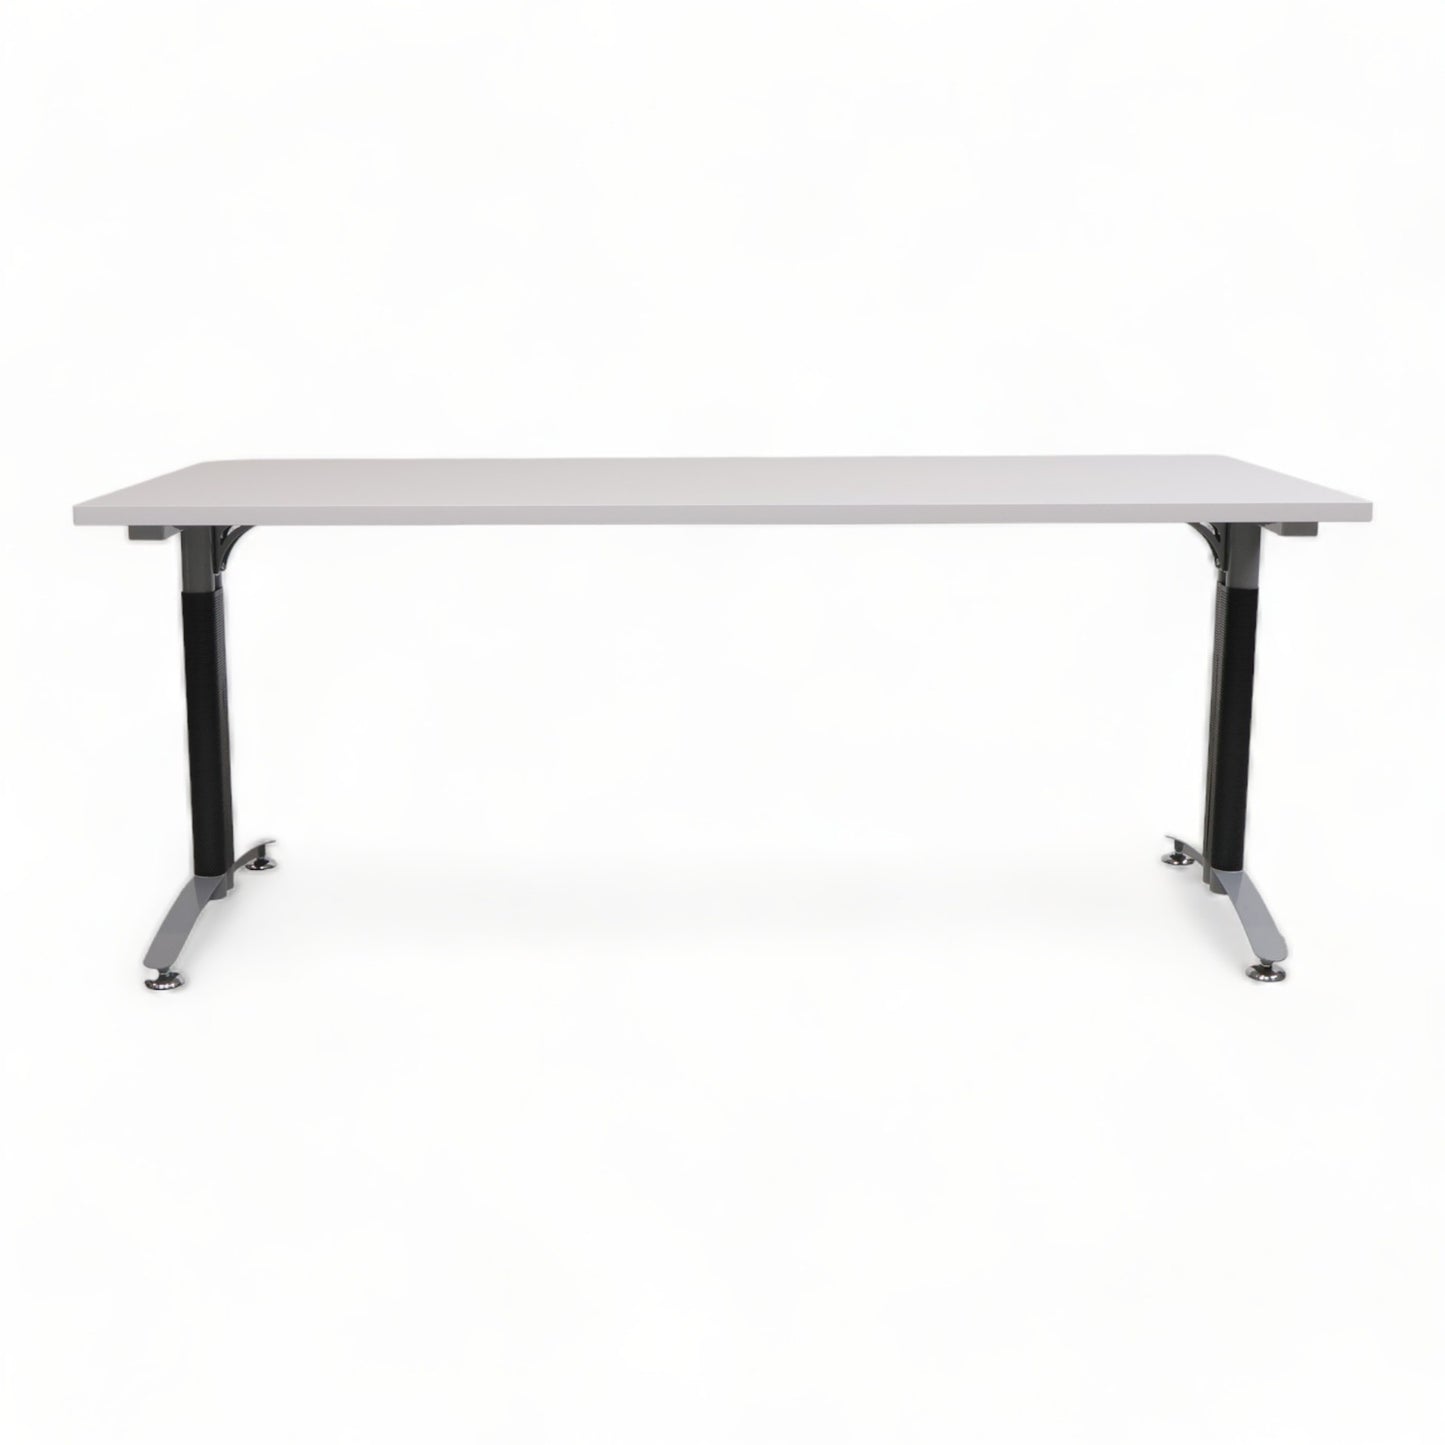 Kvalitetssikret | 180x80 cm, grått skrivebord på sort understell